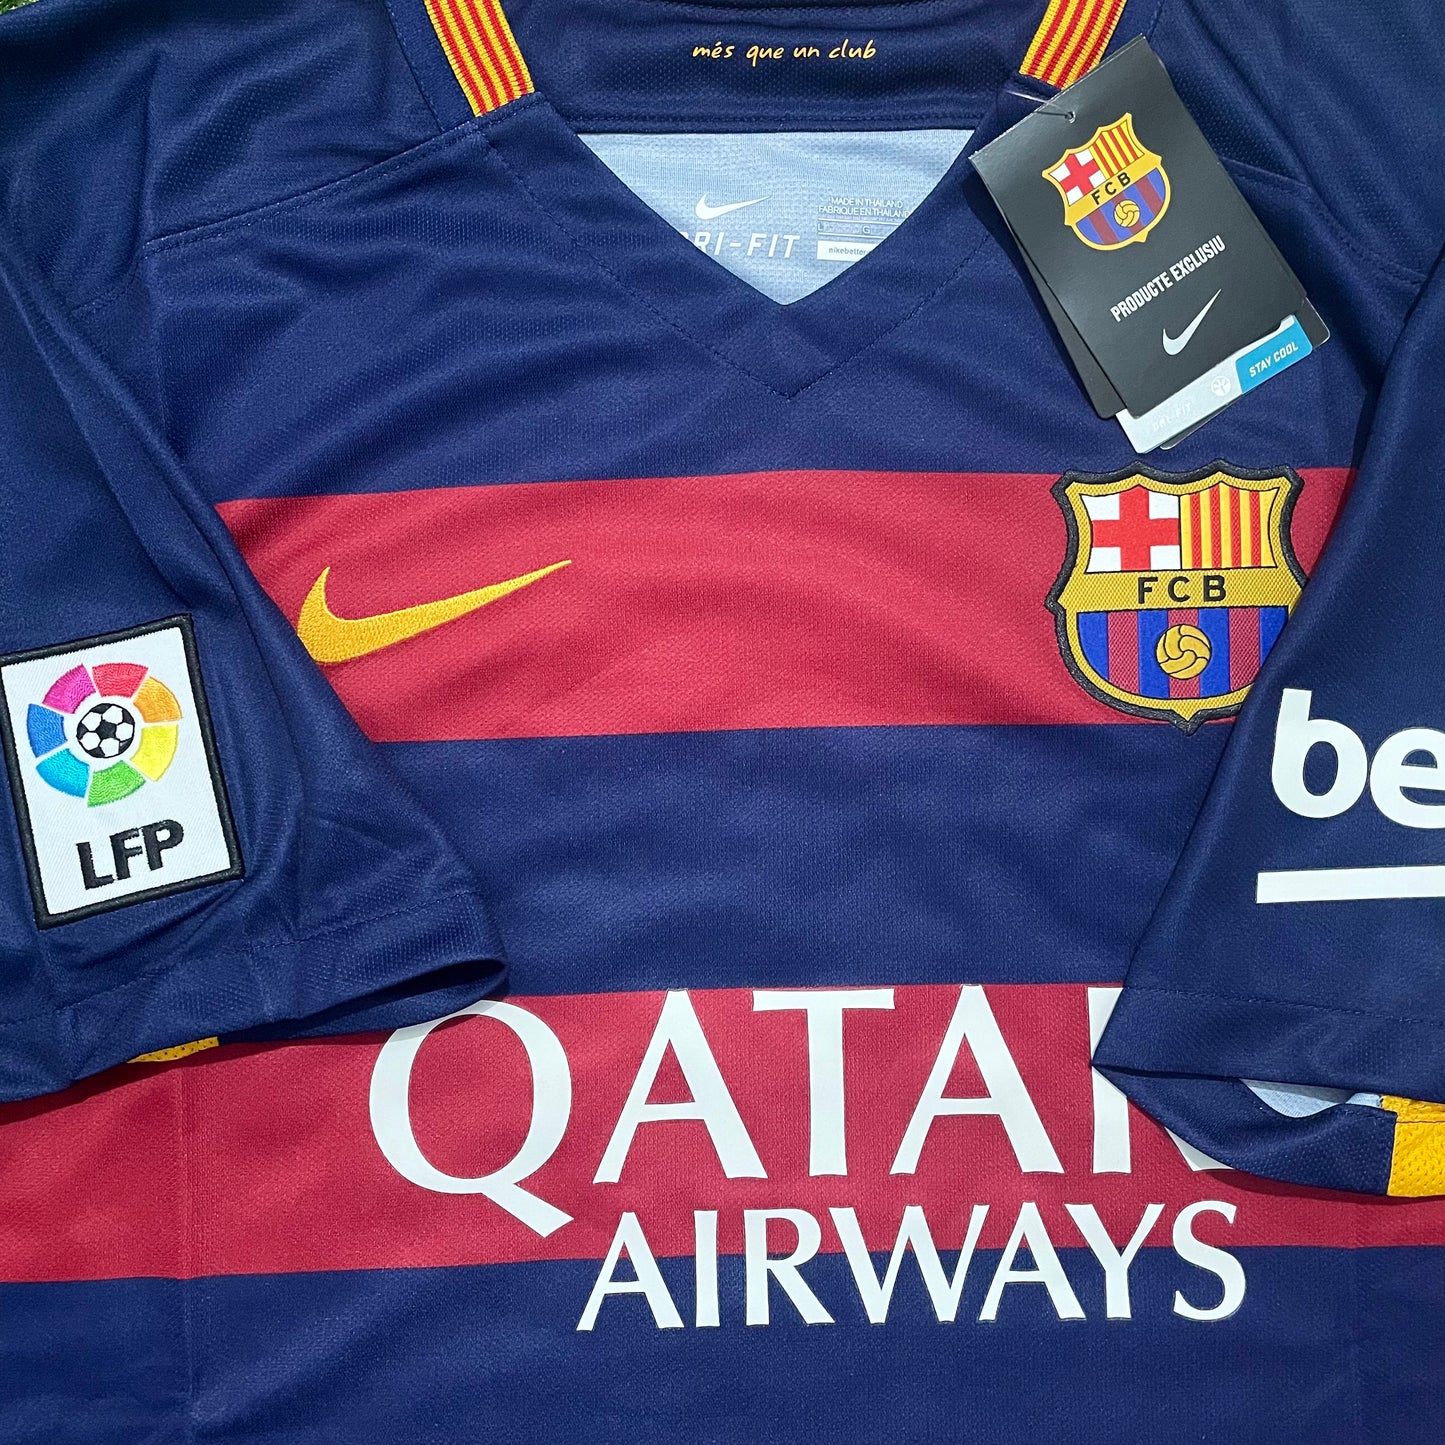 <tc>2015-2016 FC Barcelona camiseta local #10 Messi (M)</tc>